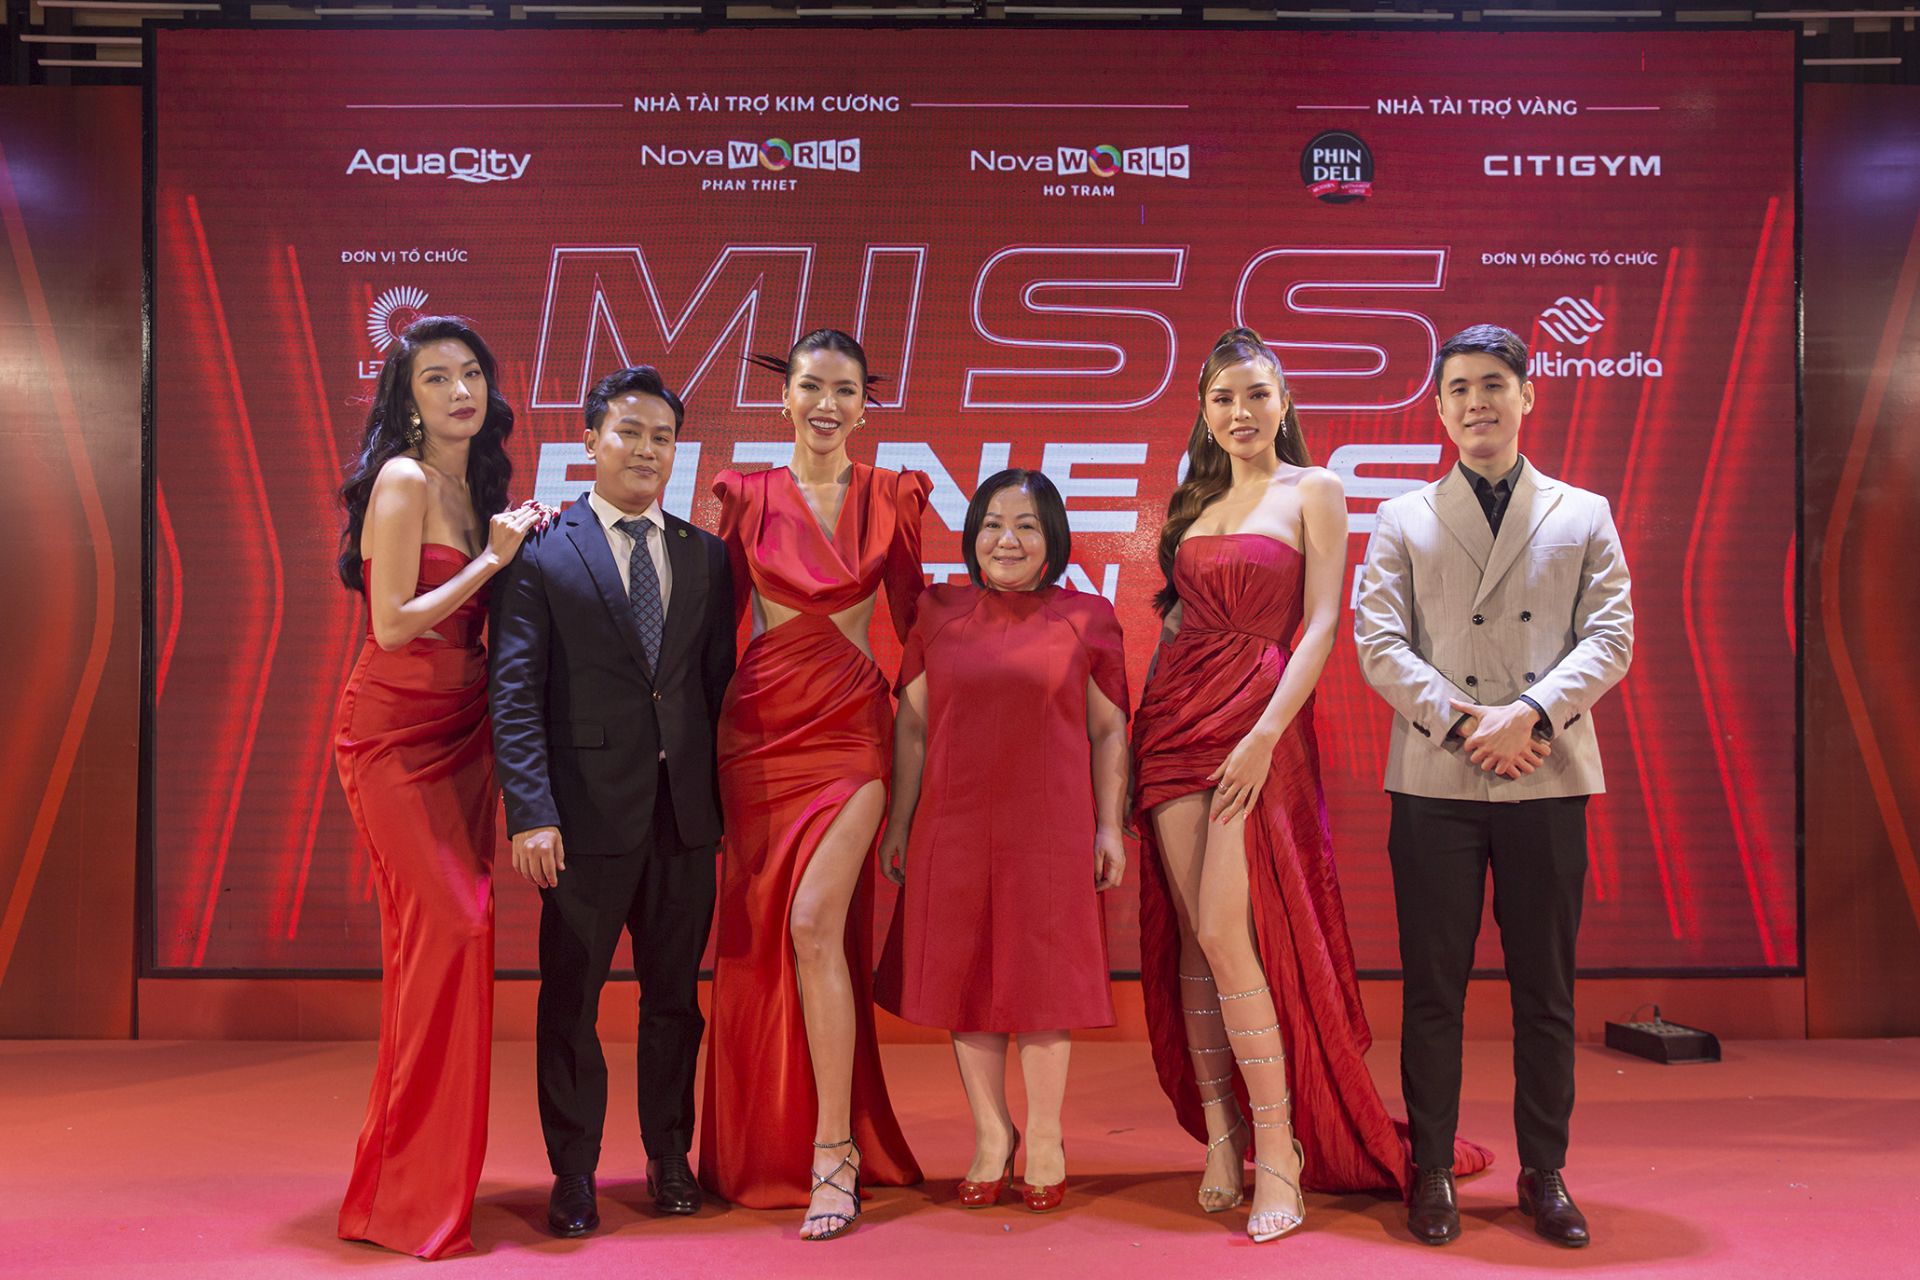 Miss Fitness Vietnam tìm kiếm những gương mặt tiêu biểu biết chăm sóc, yêu thương bản thân thông qua việc duy trì tập luyện mỗi ngày